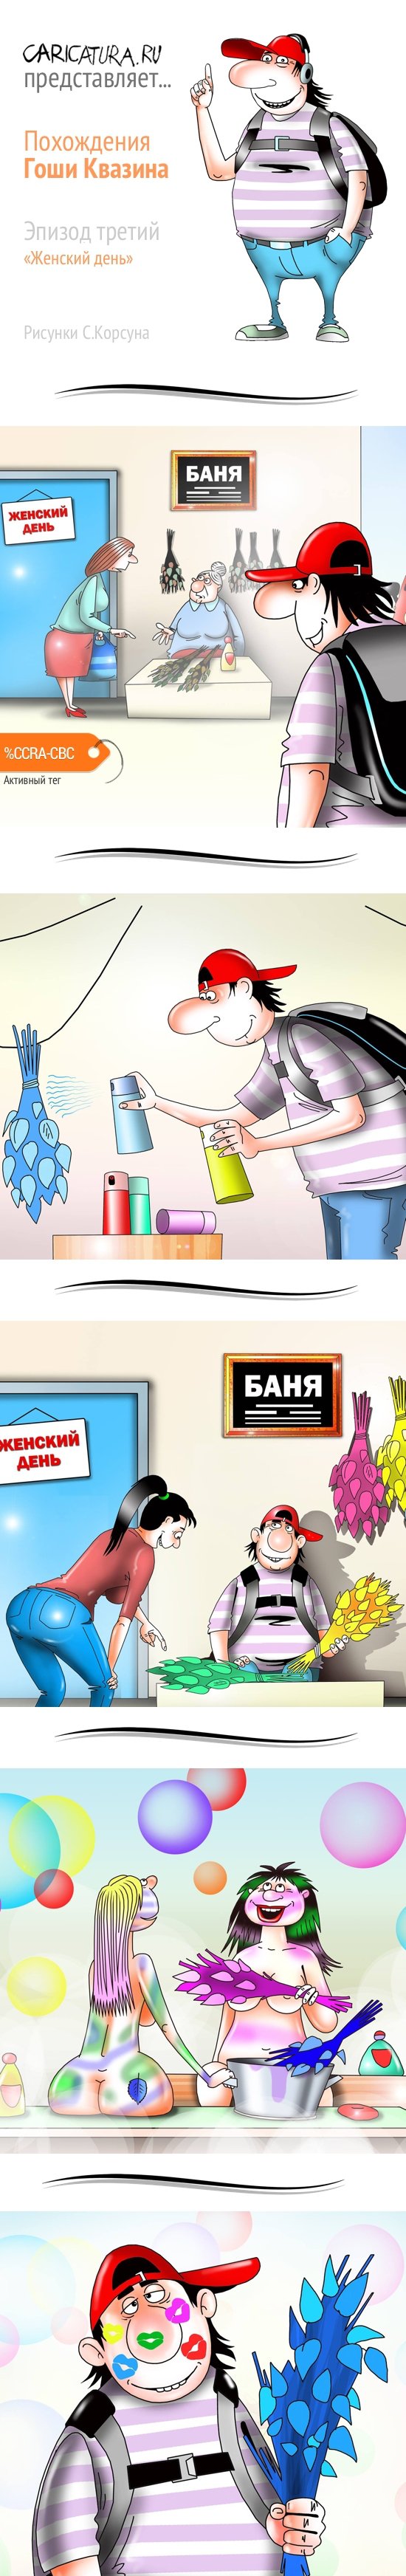 Комикс "Похождения Гоши Квазина. Эпизод 3", Агентство Карикатура.ру